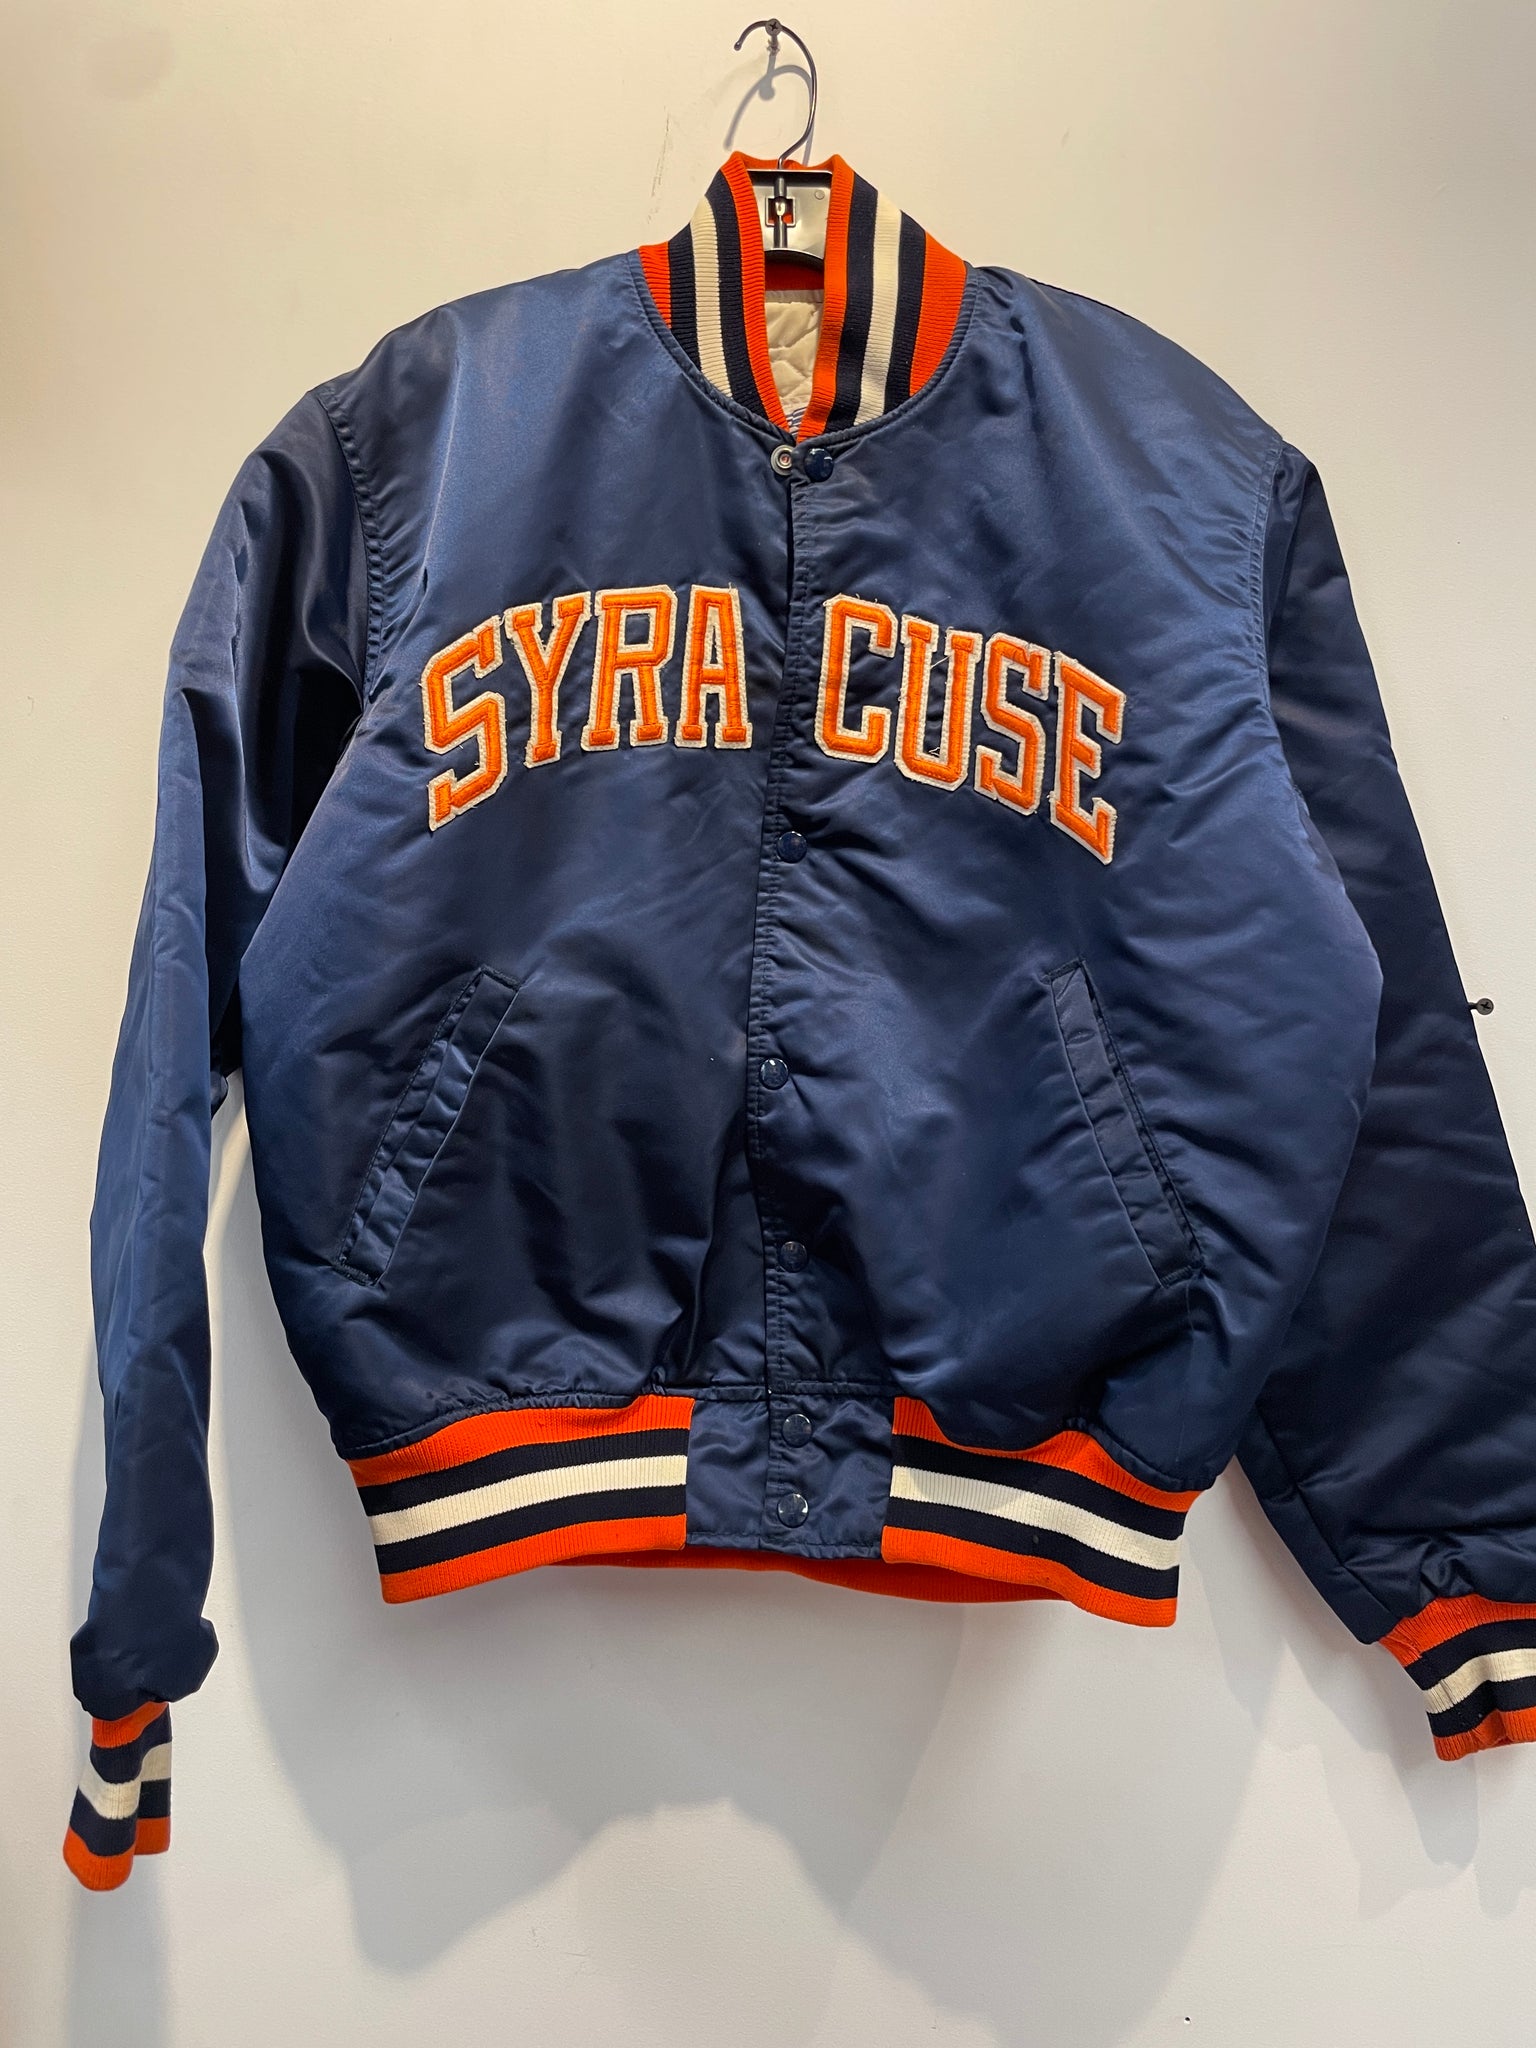 Vintage Syracuse Starter Satin Bomber Jacket J41 – Scholars & Champs